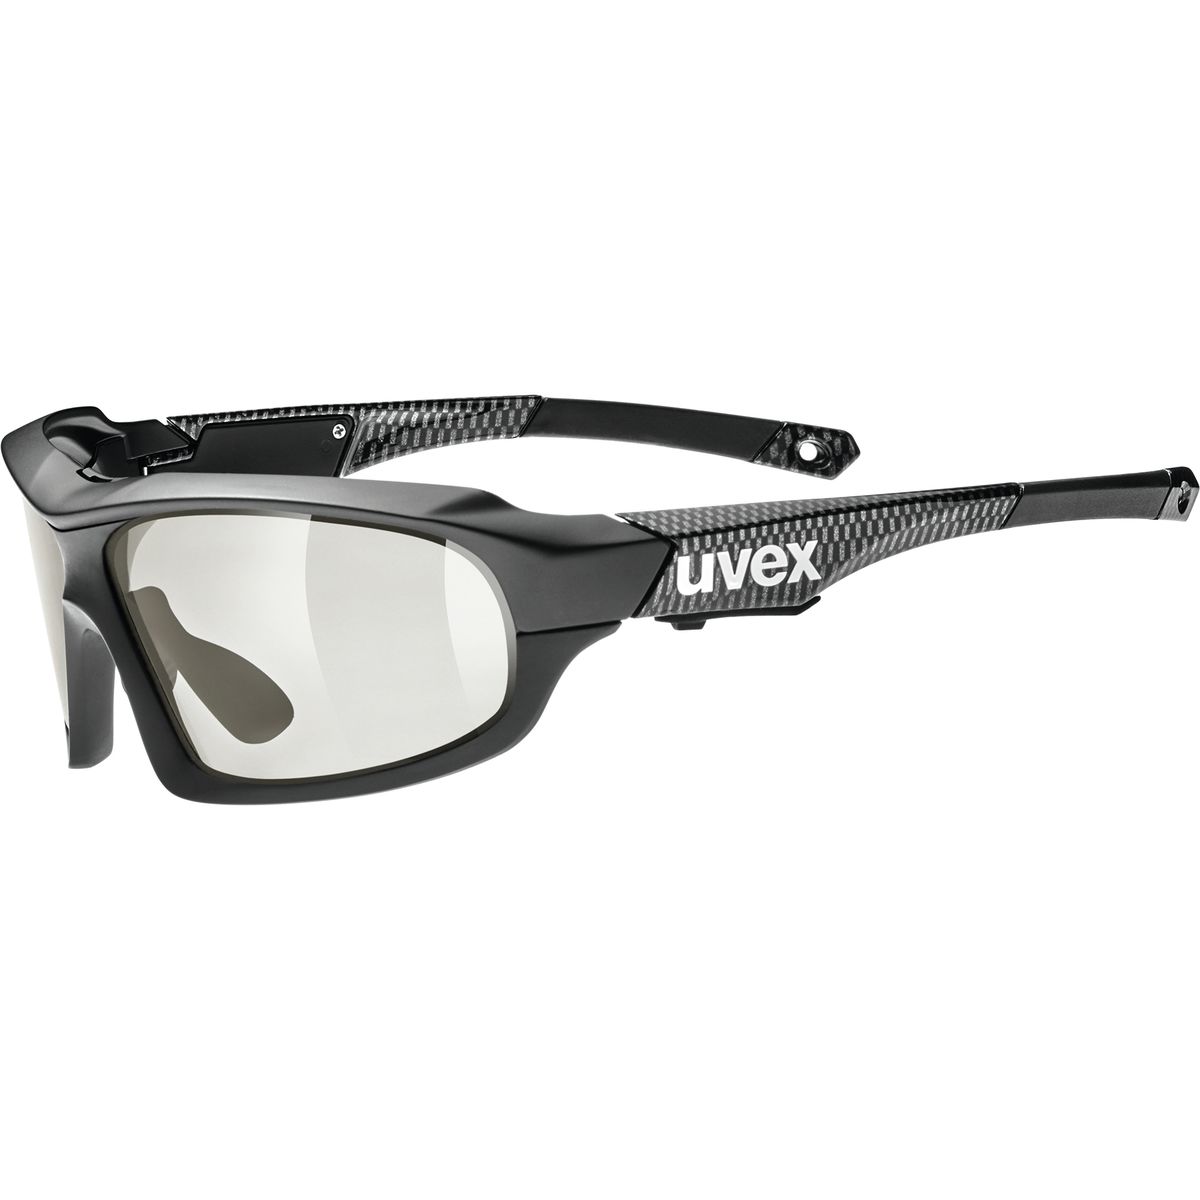 Uvex Variotronic FF Sunglasses Men's